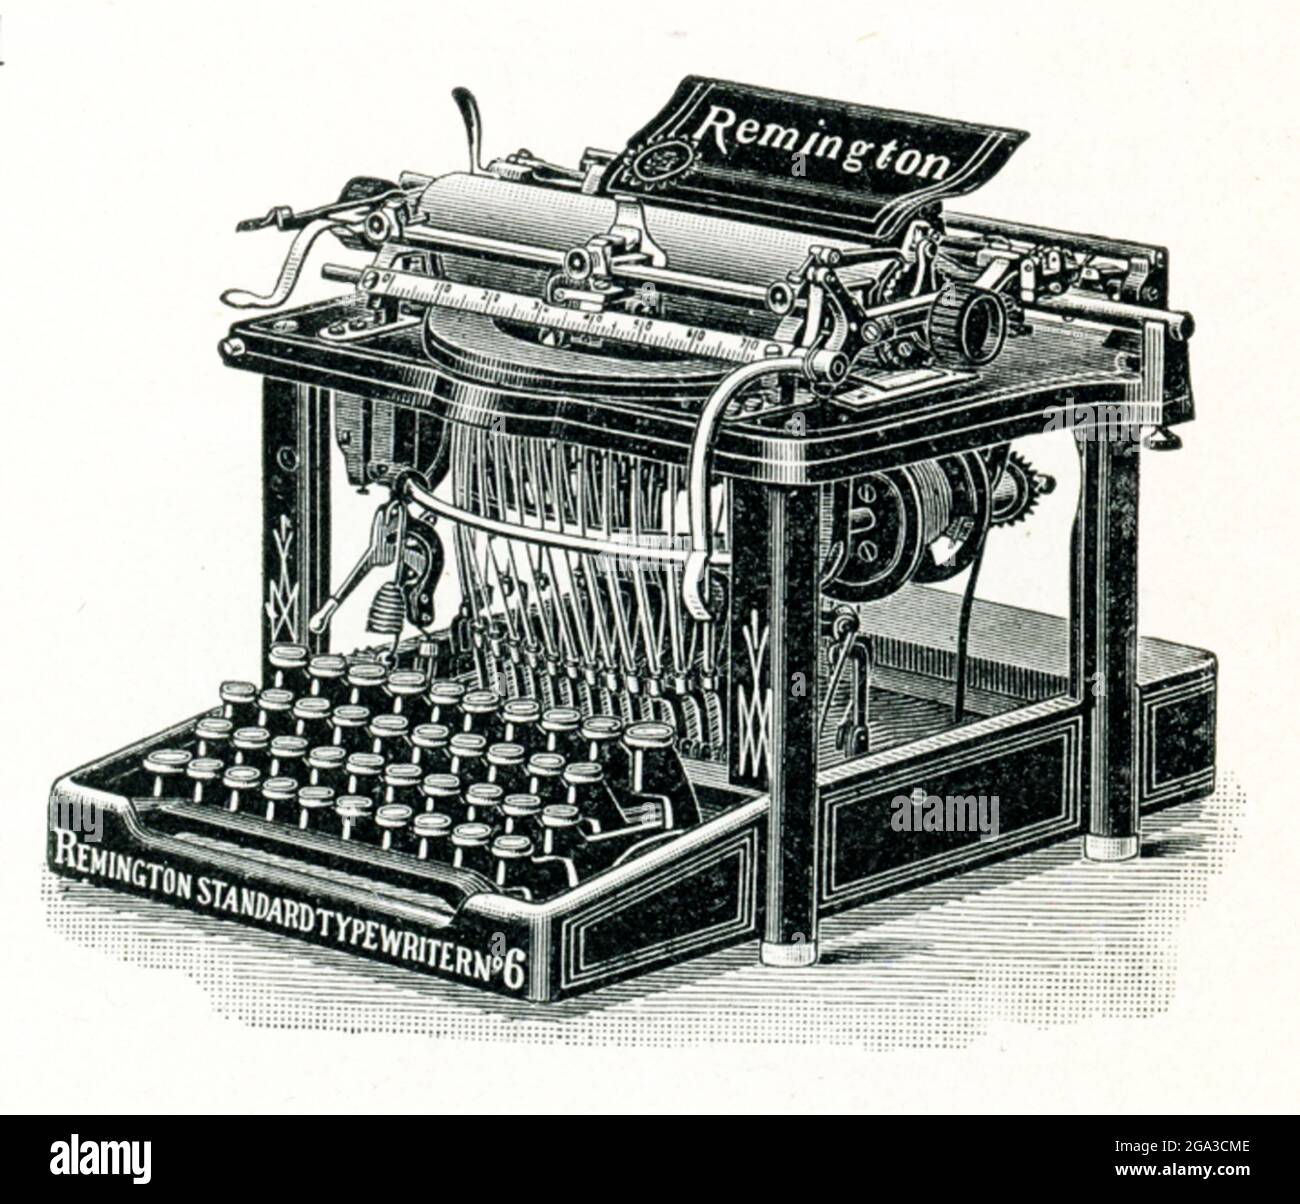 Diese Remington Standard Model Number 6 Schreibmaschine wurde um 1894 von der Remington Standard Schreibmaschine Company hergestellt. Die Modellnummer 6 enthielt viele Verbesserungen an Remington’s früheren Modellen, darunter einen verbesserten Zylinder, einen verbesserten Abstandsmechanismus, einen verbesserten Papierwagen und einstellbare Papierführungen. Viele dieser Verbesserungen sind auf den Erfindungsreichtum des Remington-Mechanisten George B. Webb zurückzuführen. Stockfoto